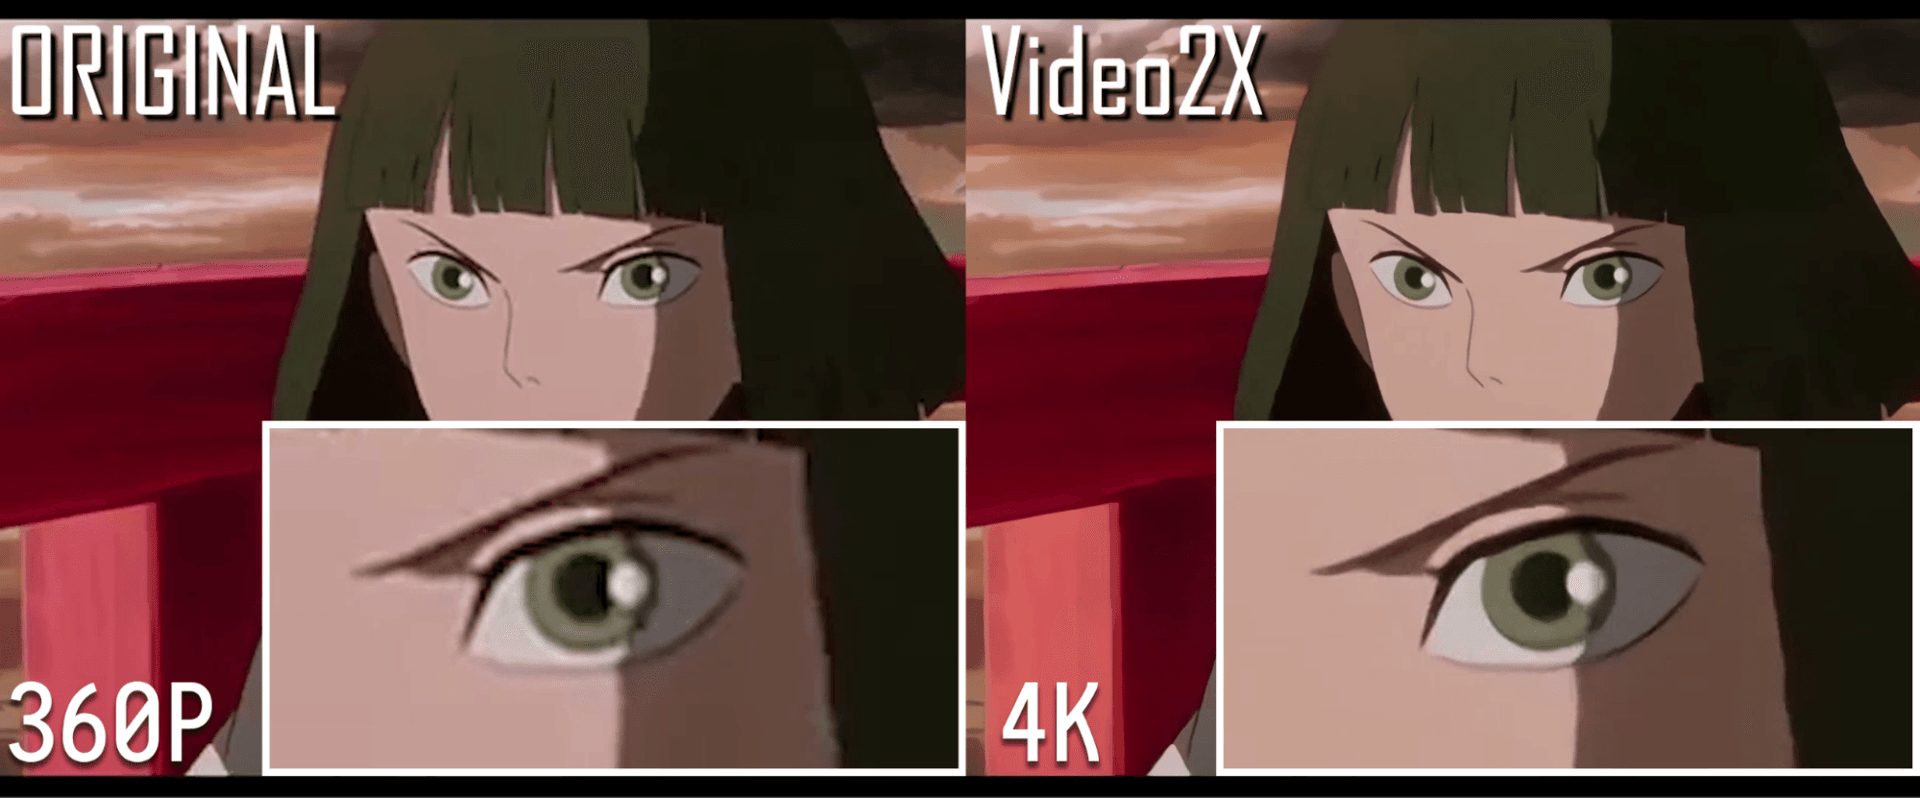 Video2x 